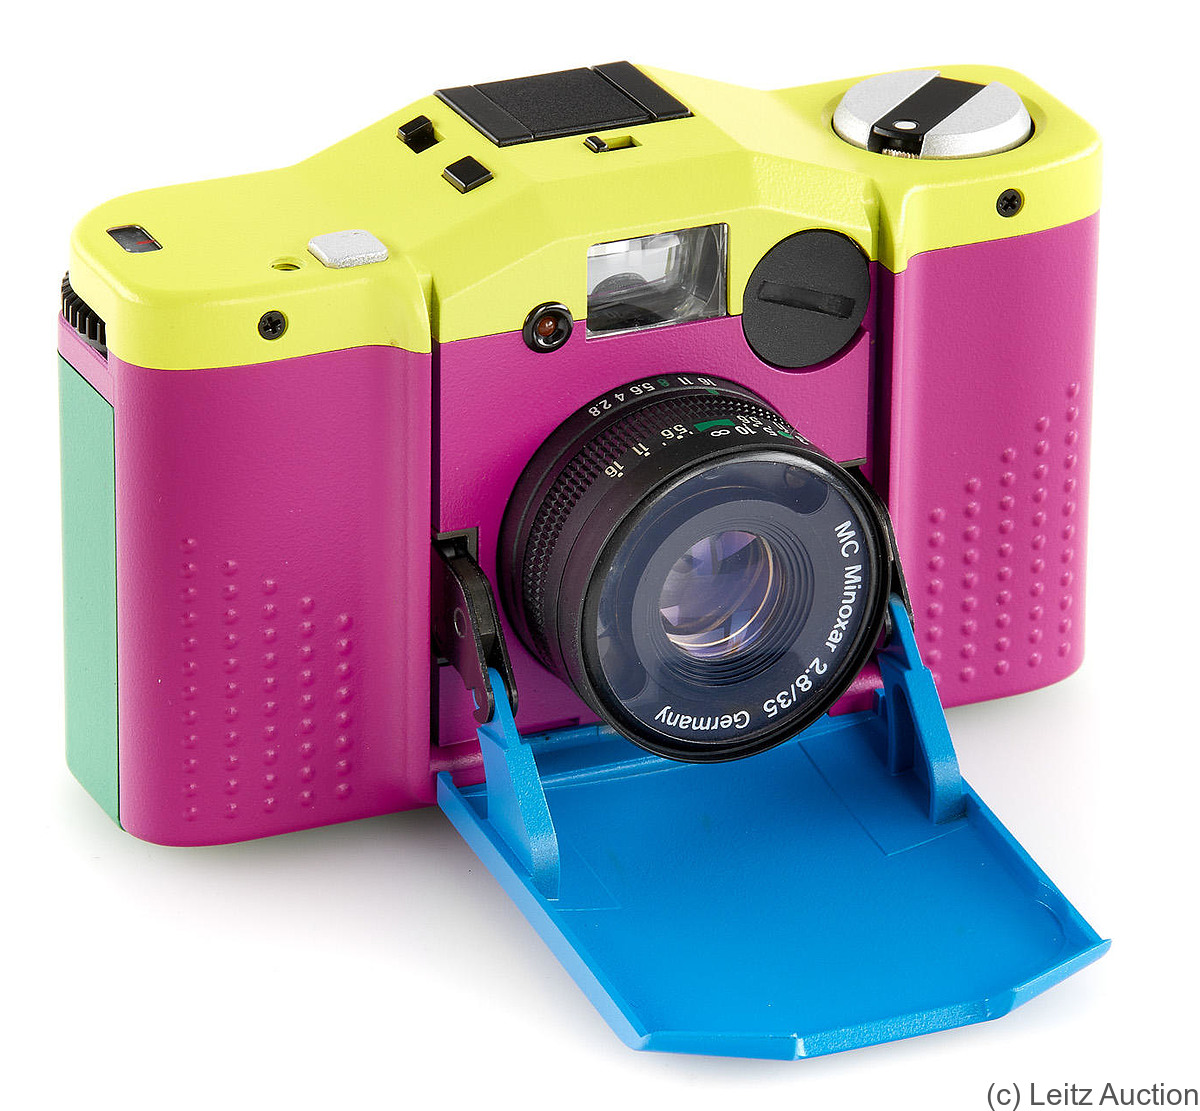 Minox: Minox 35 Multicolor (prototype) camera